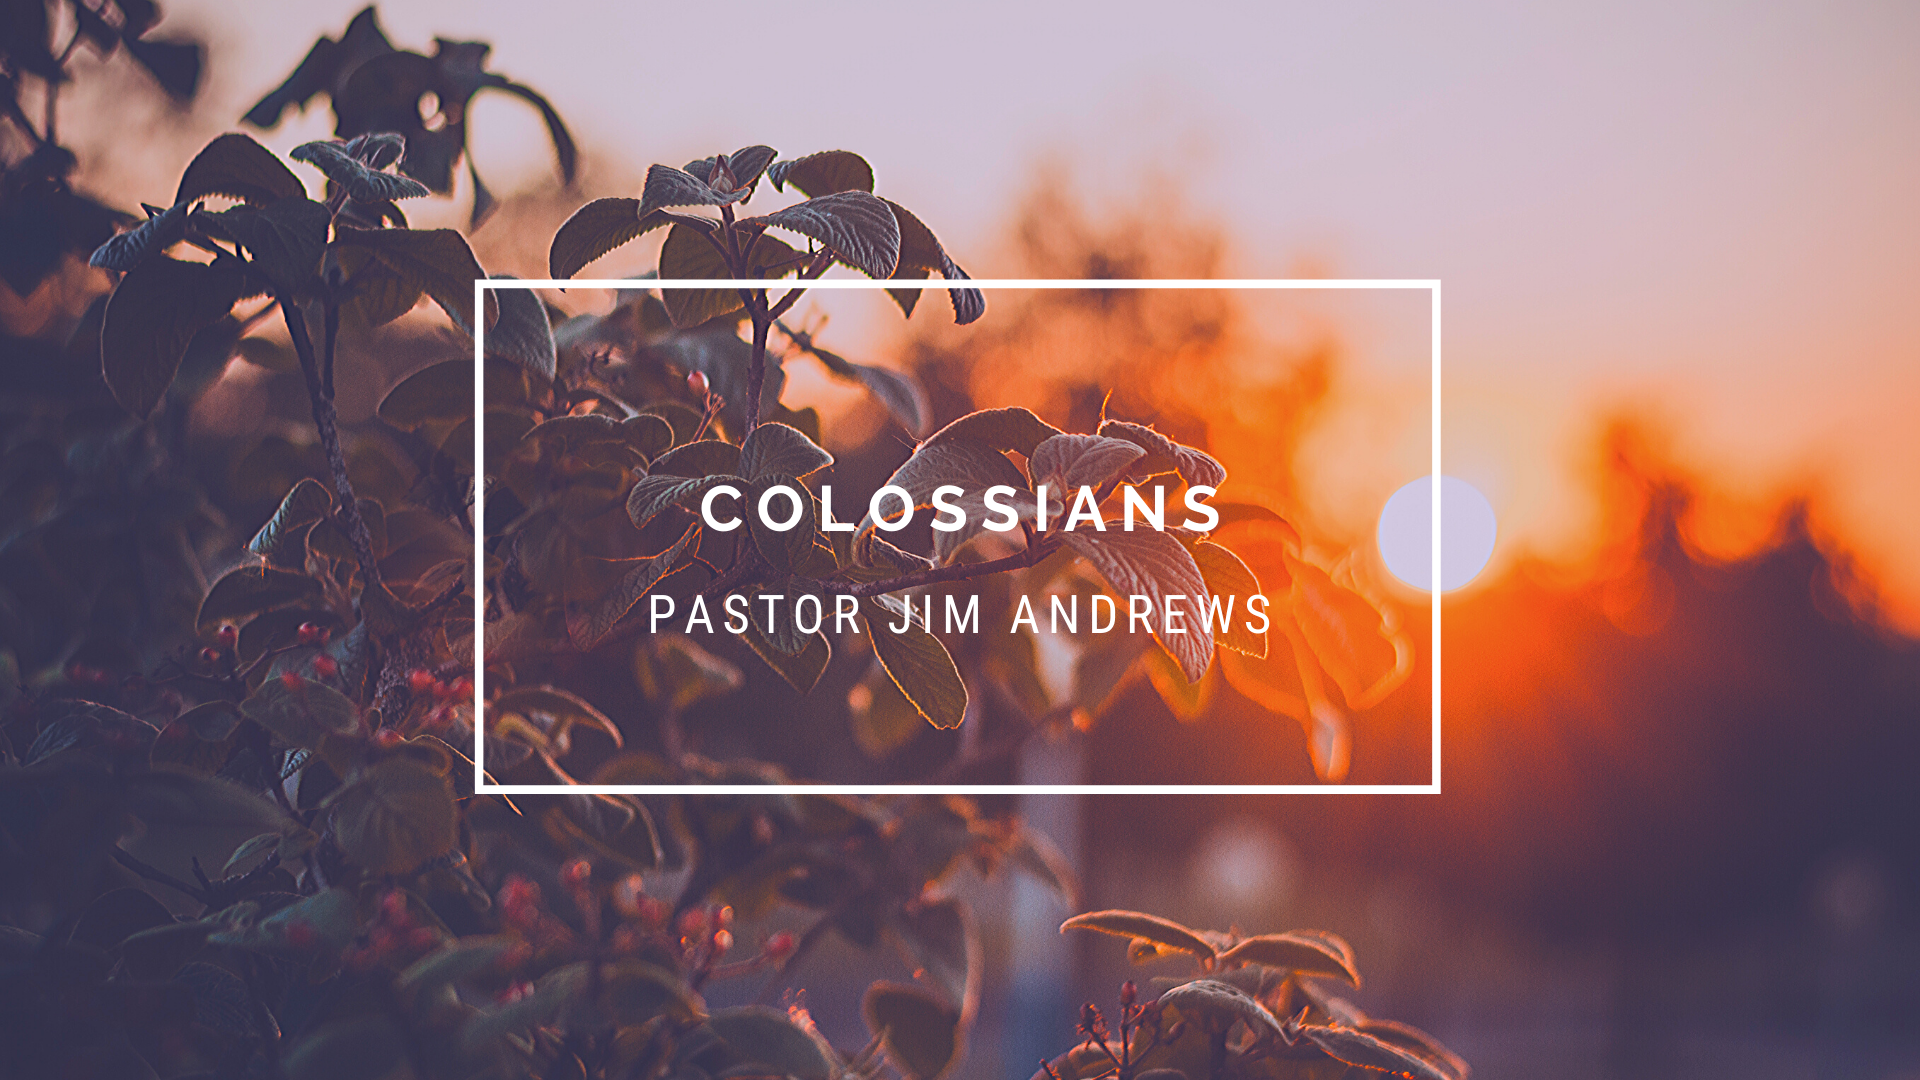 Colossians 1:18-20